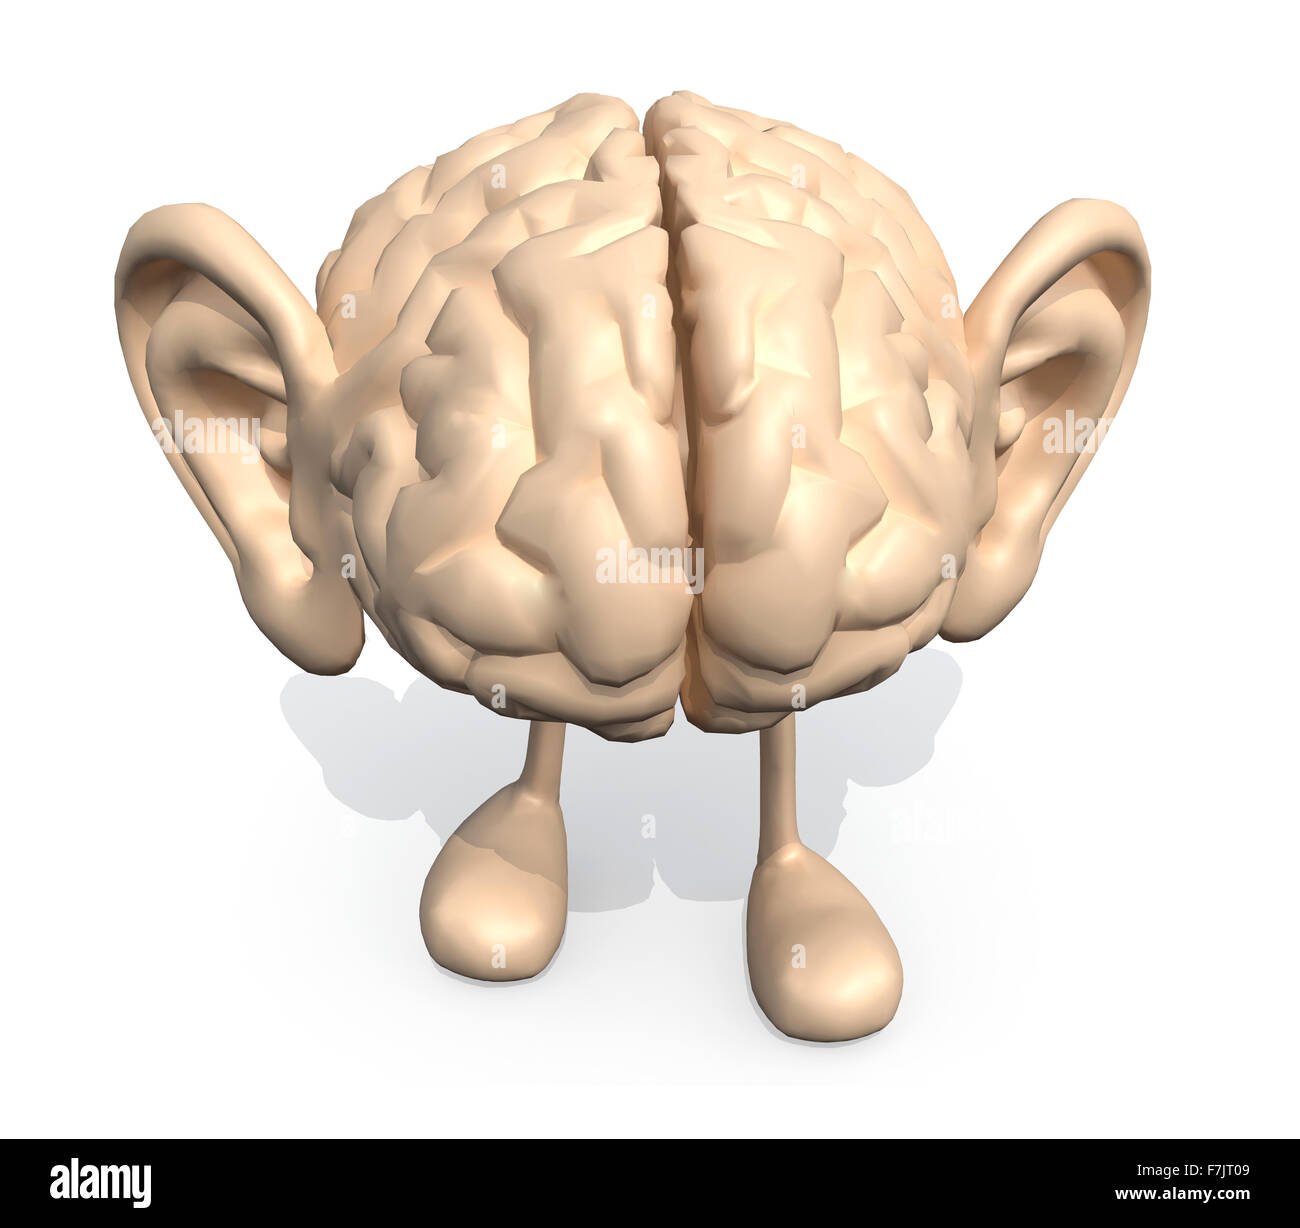 menschlichen Gehirns mit großen Ohren und Beine, 3d illustration Stockfoto